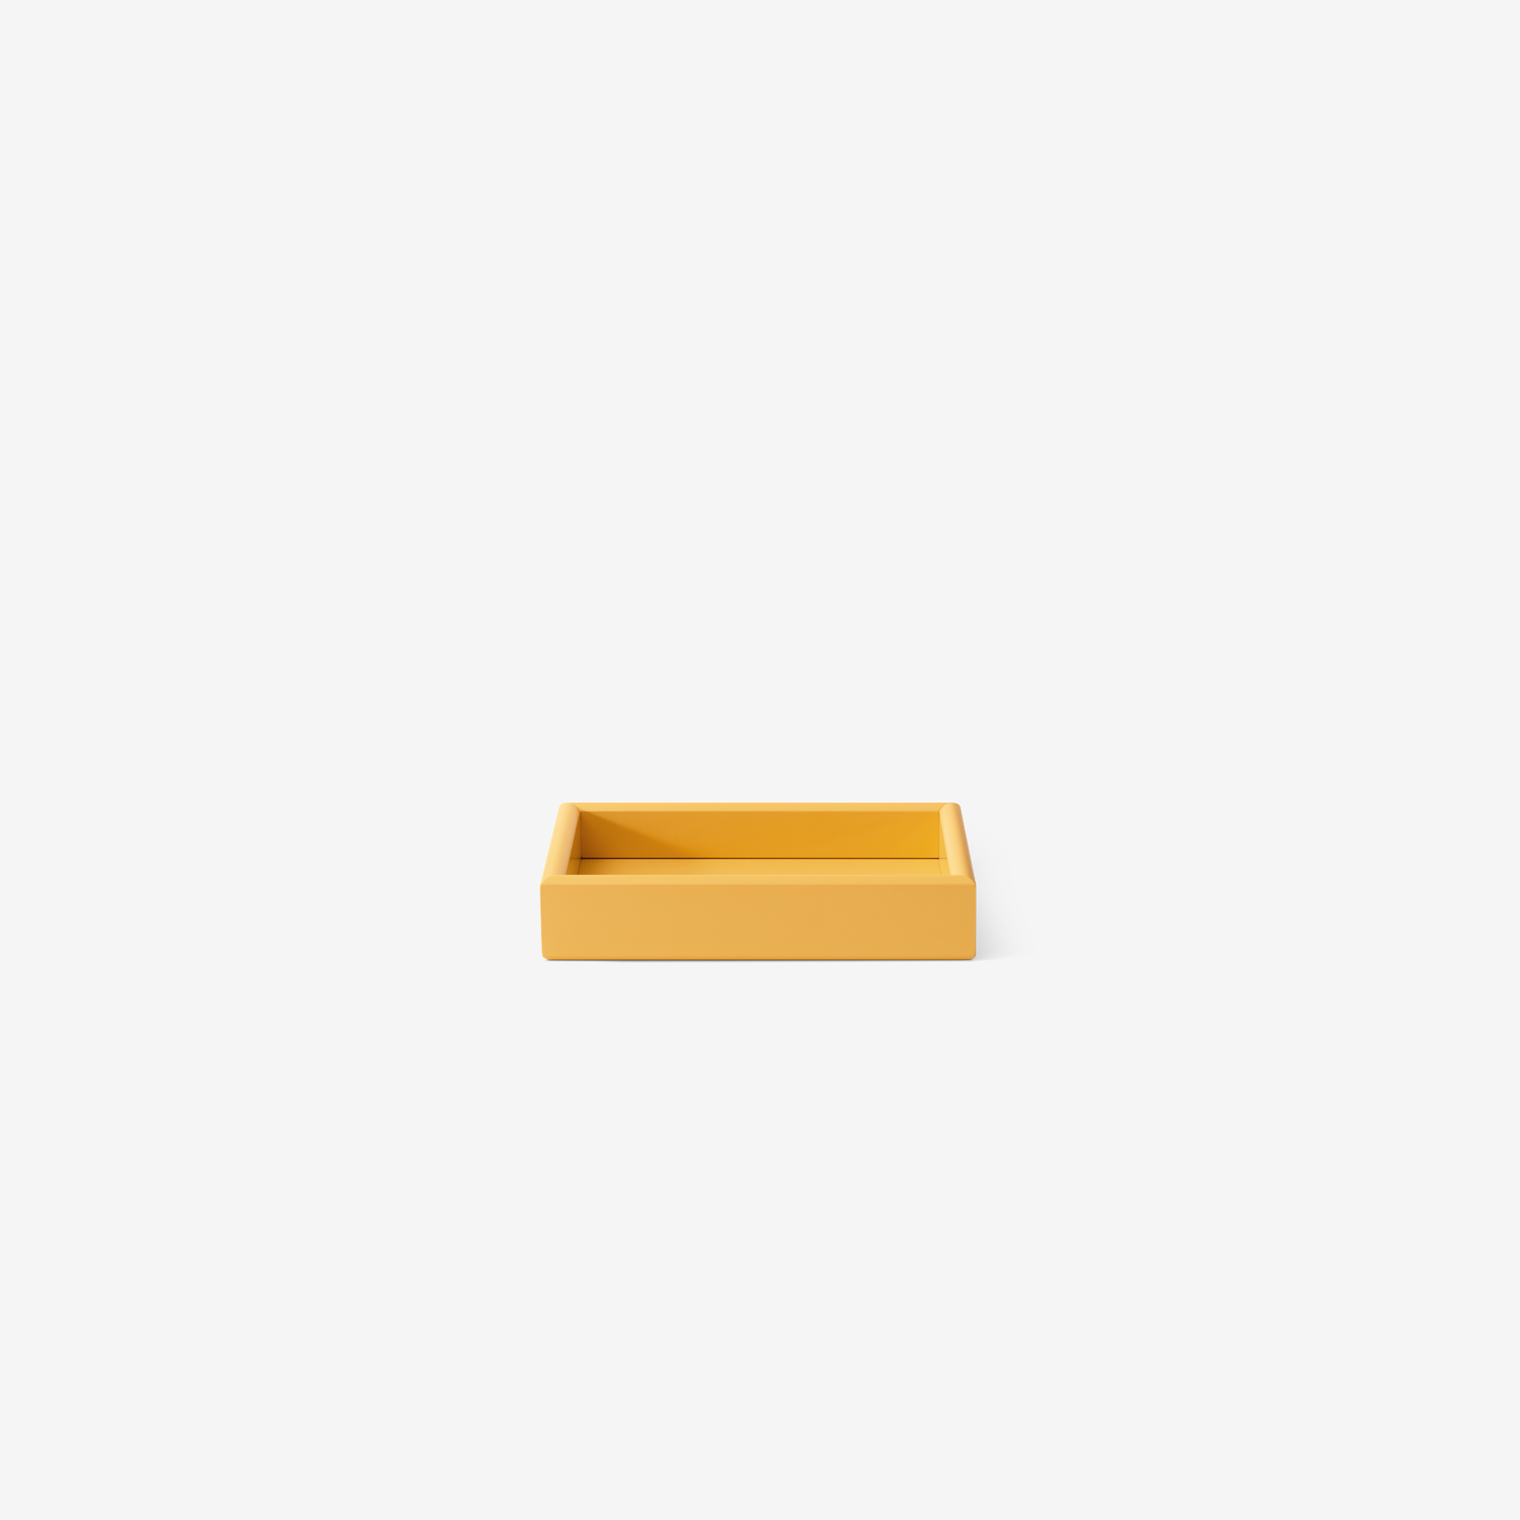 ARRANGE – Small tray (41T)